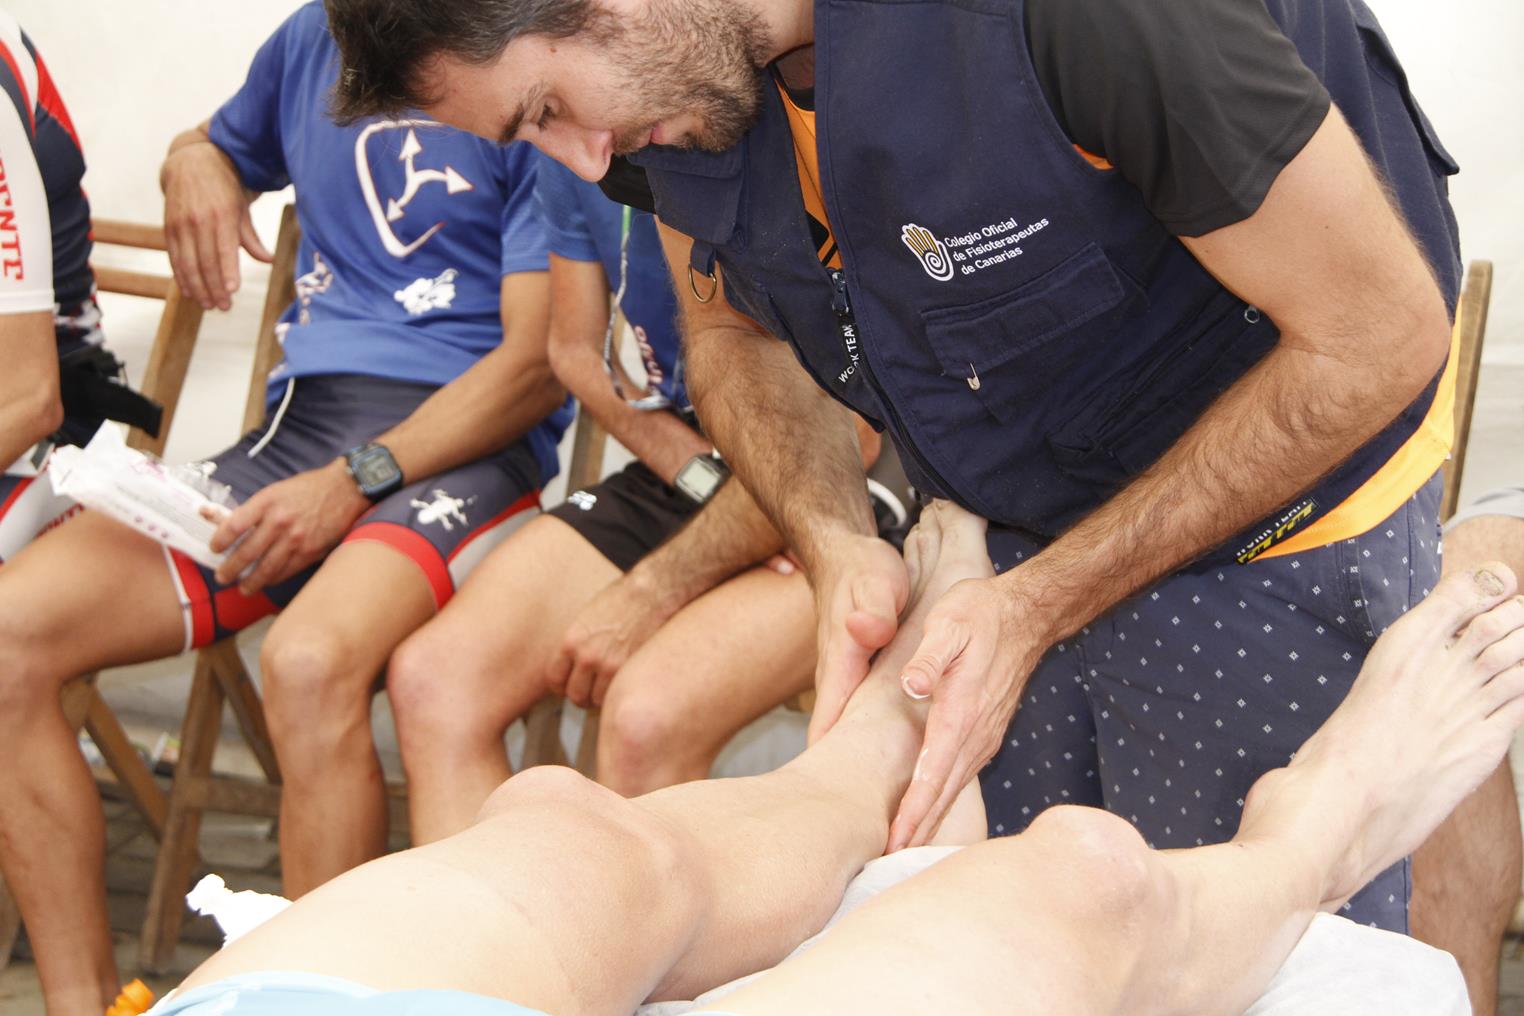  El Colegio de Fisioterapeutas organizó 15 dispositivos asistenciales en pruebas deportivas del Archipiélago en 2018